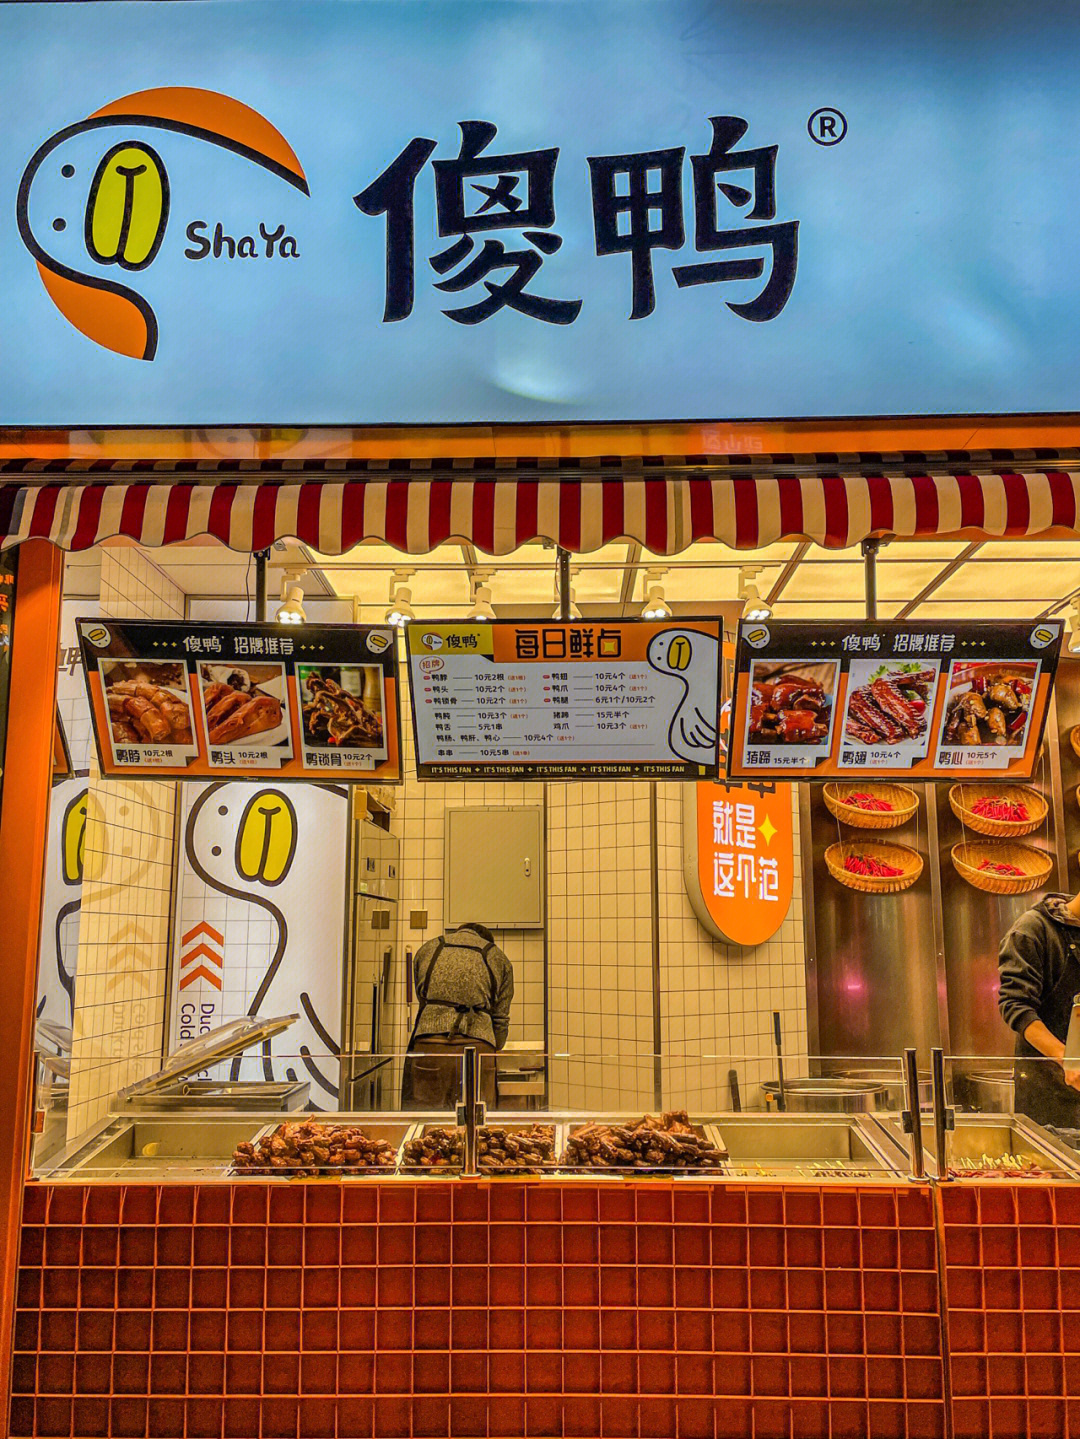 最近新街口开了好多鸭货店,话说南京人真的太会了,能给鸭子出一百种